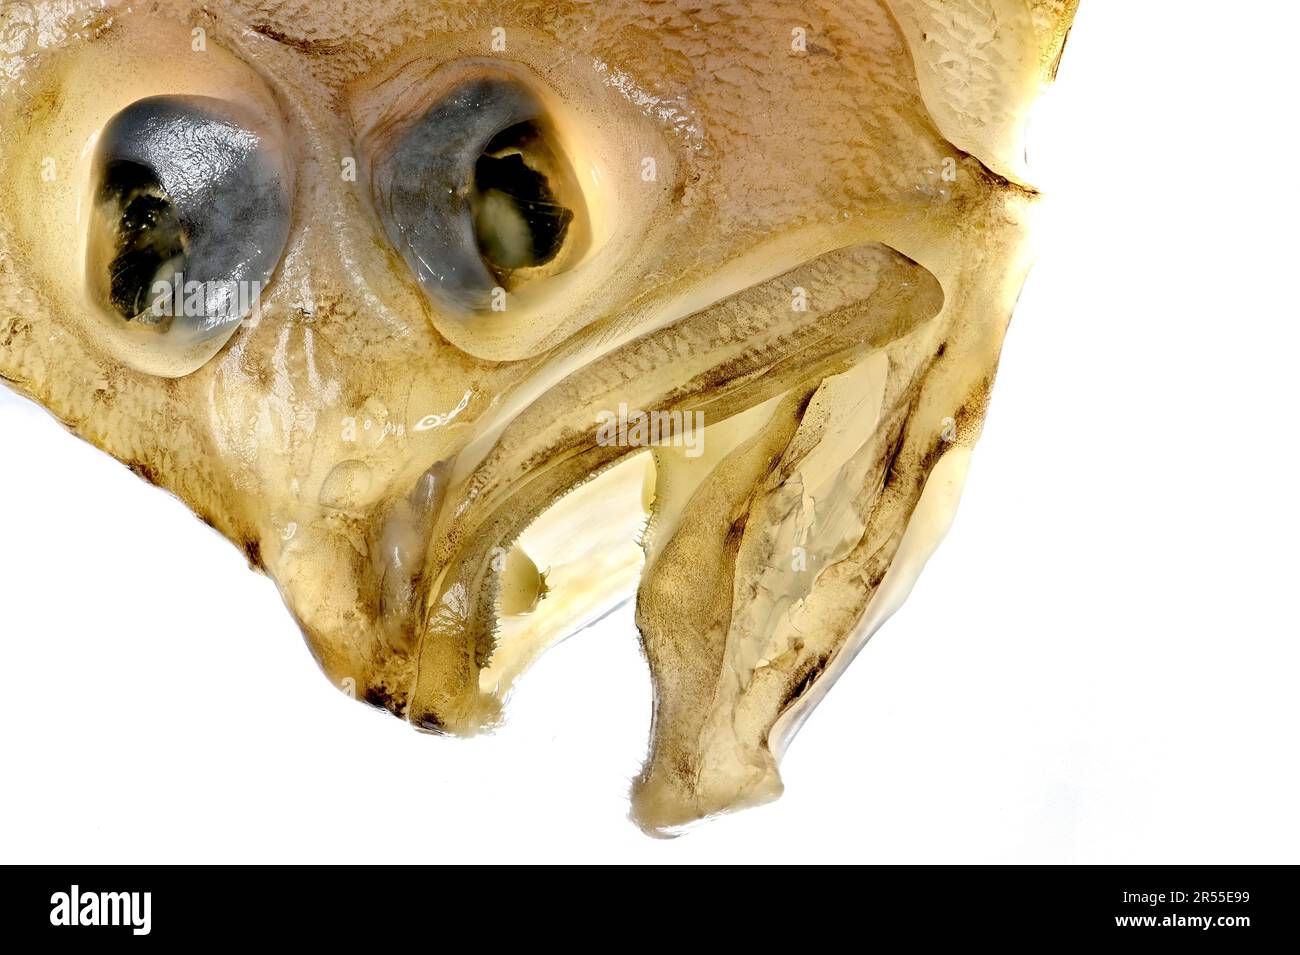 Megrim / Megrim Sole / Whiff / Cornish Sole (Lepidorhombus whiffiagonis) left-eyed flatfish -lit from behind Stock Photo